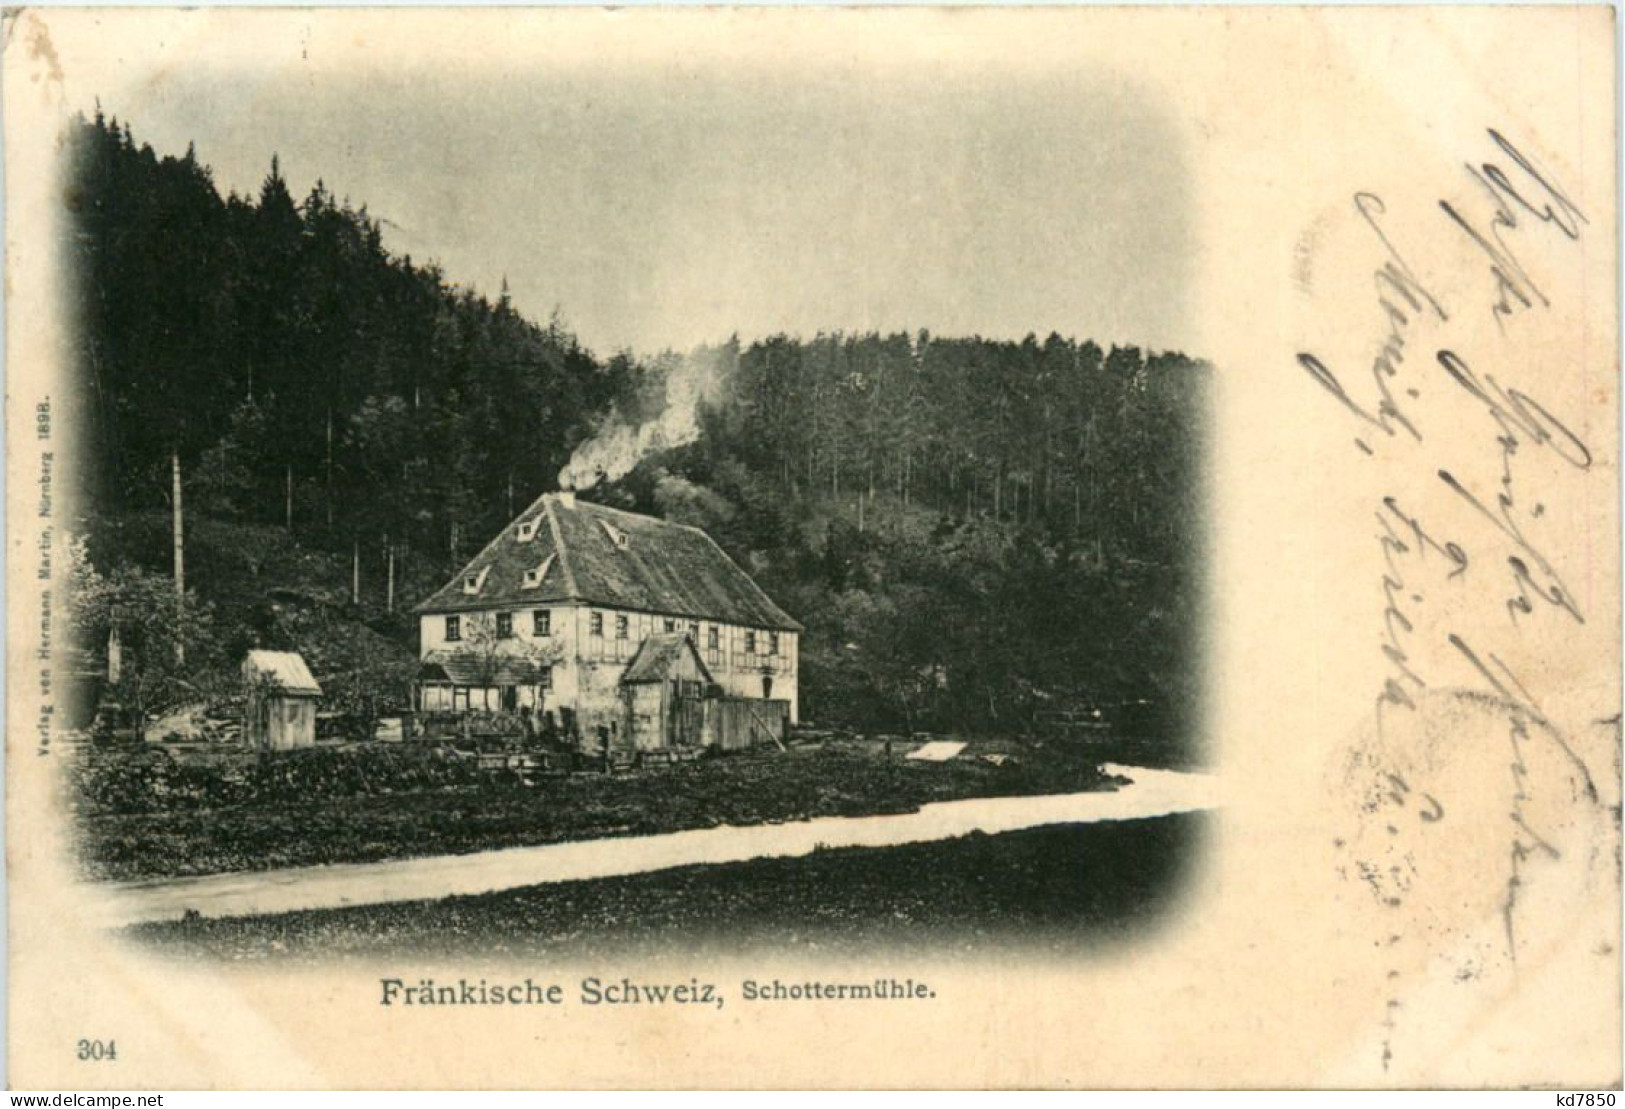 Fränkische Schweiz, Schottermühle - Forchheim